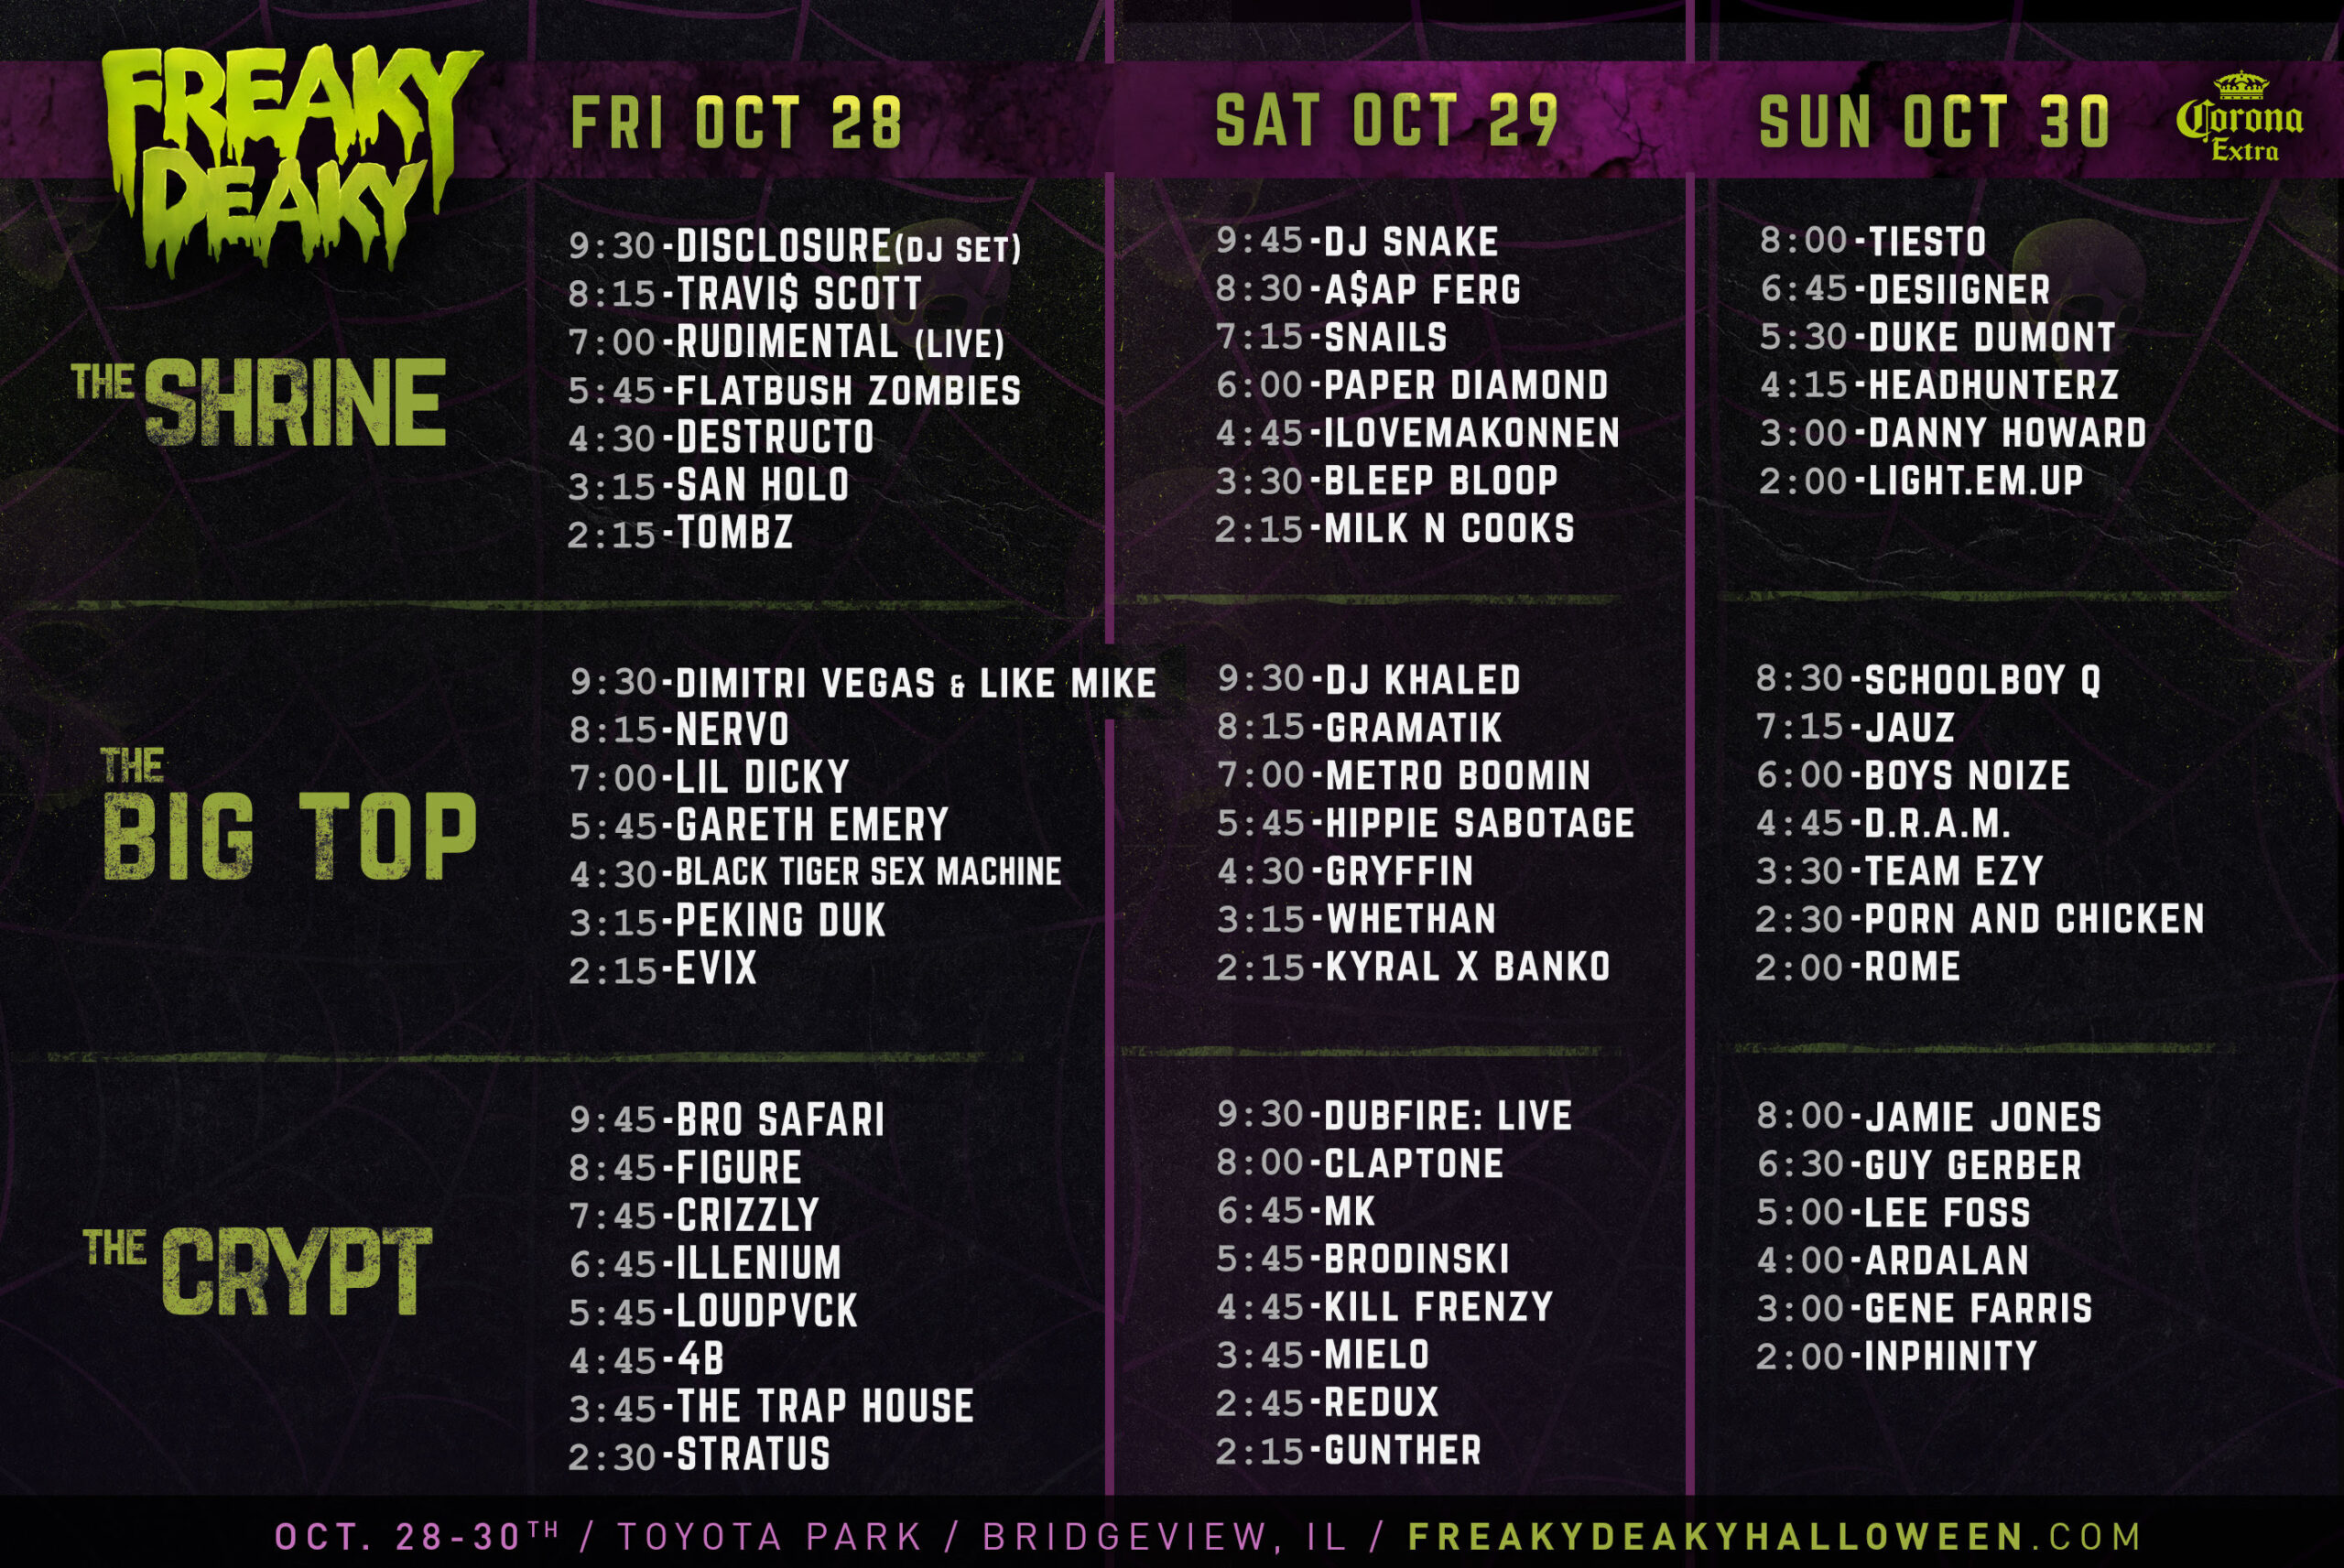 Freaky Deaky 2016 schedule. Photo by: Freaky Deaky